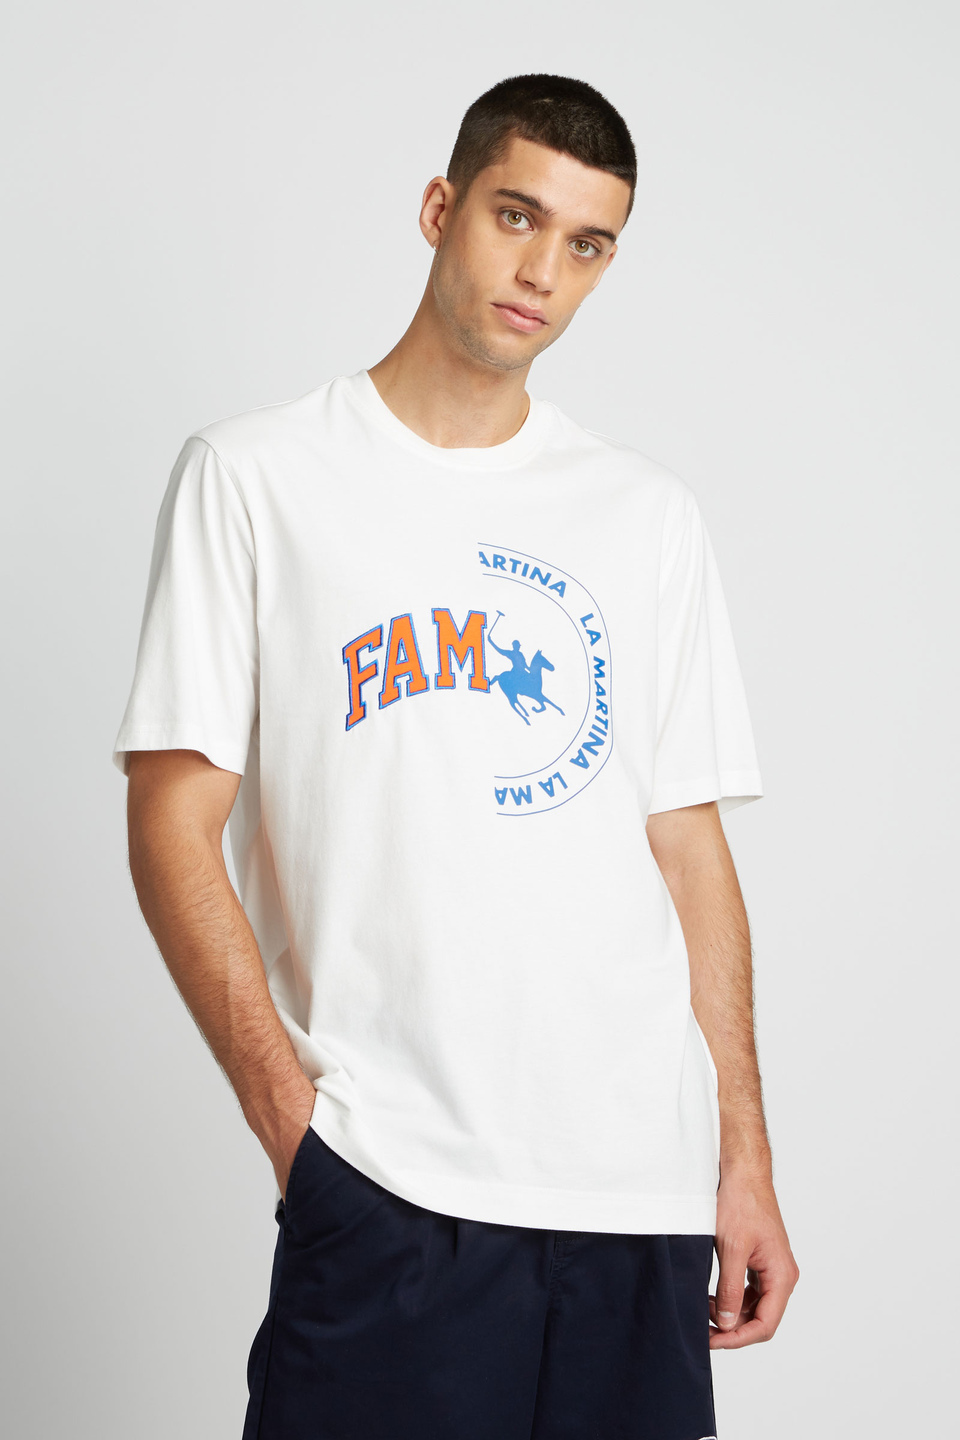 Herren-T-Shirt mit kurzem Arm aus 100 % Baumwolle, oversized - La Martina - Official Online Shop